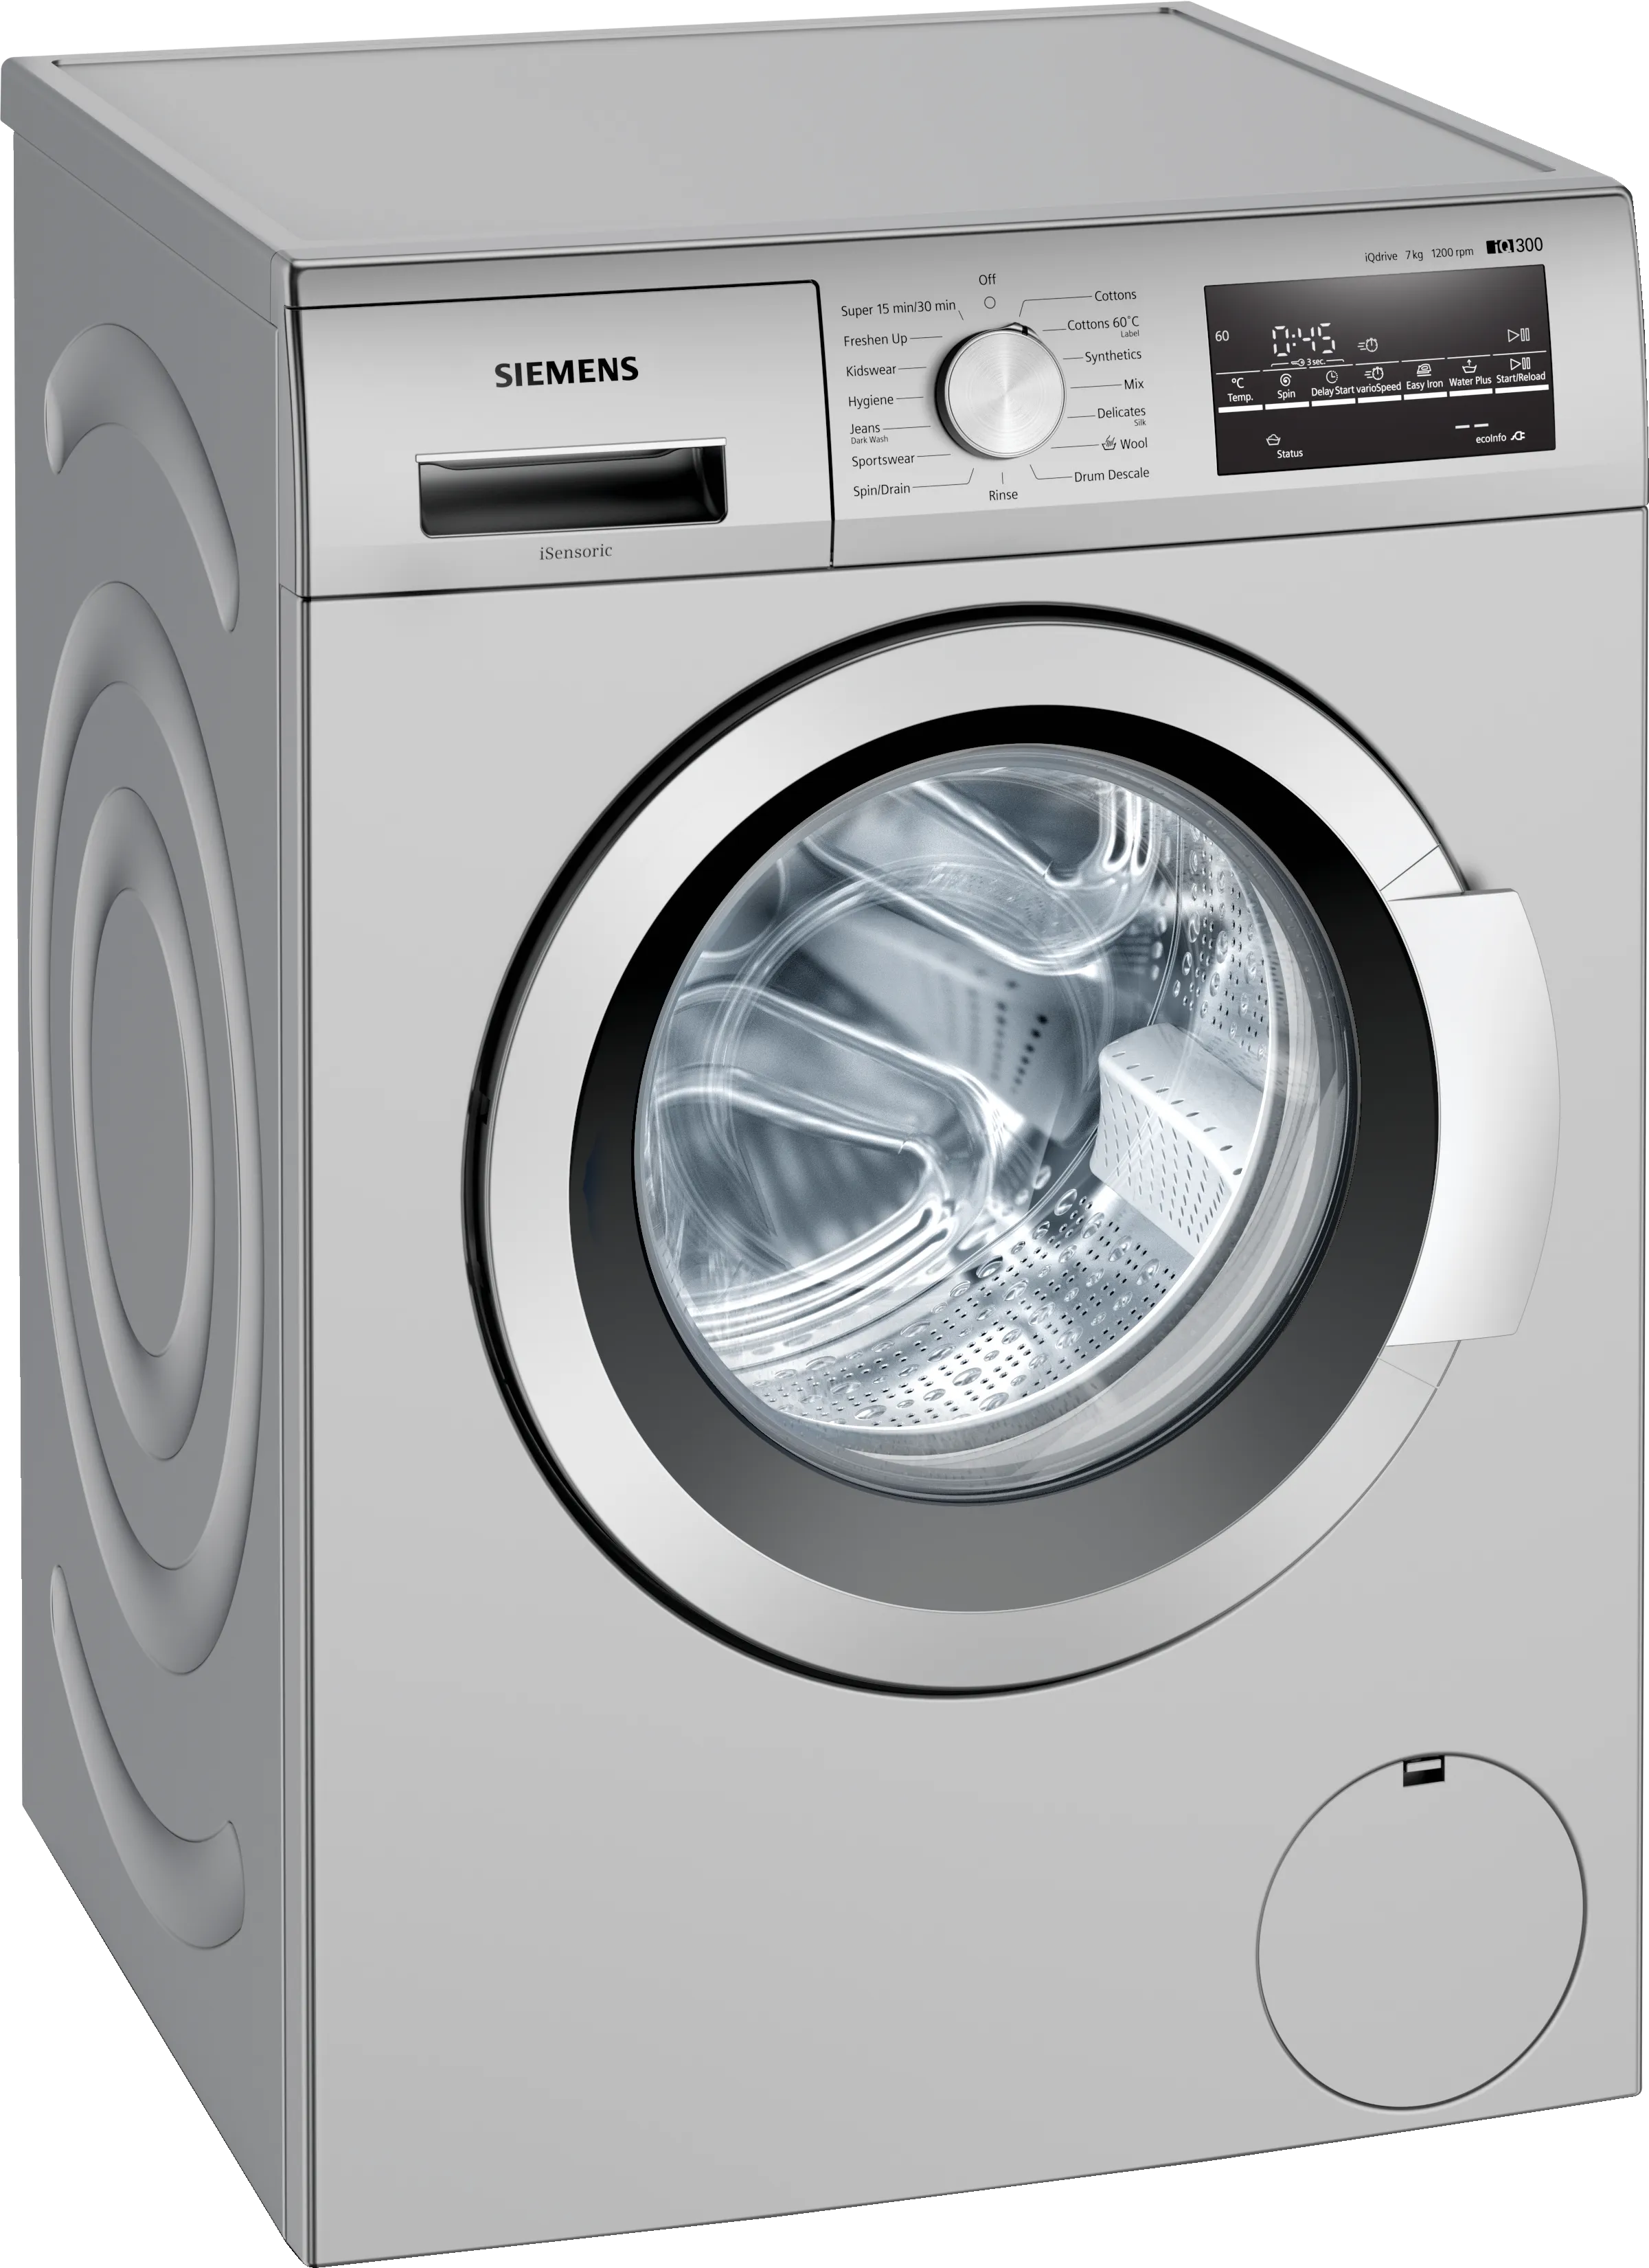 iQ300 washing machine, front loader 7 kg 1200 rpm 